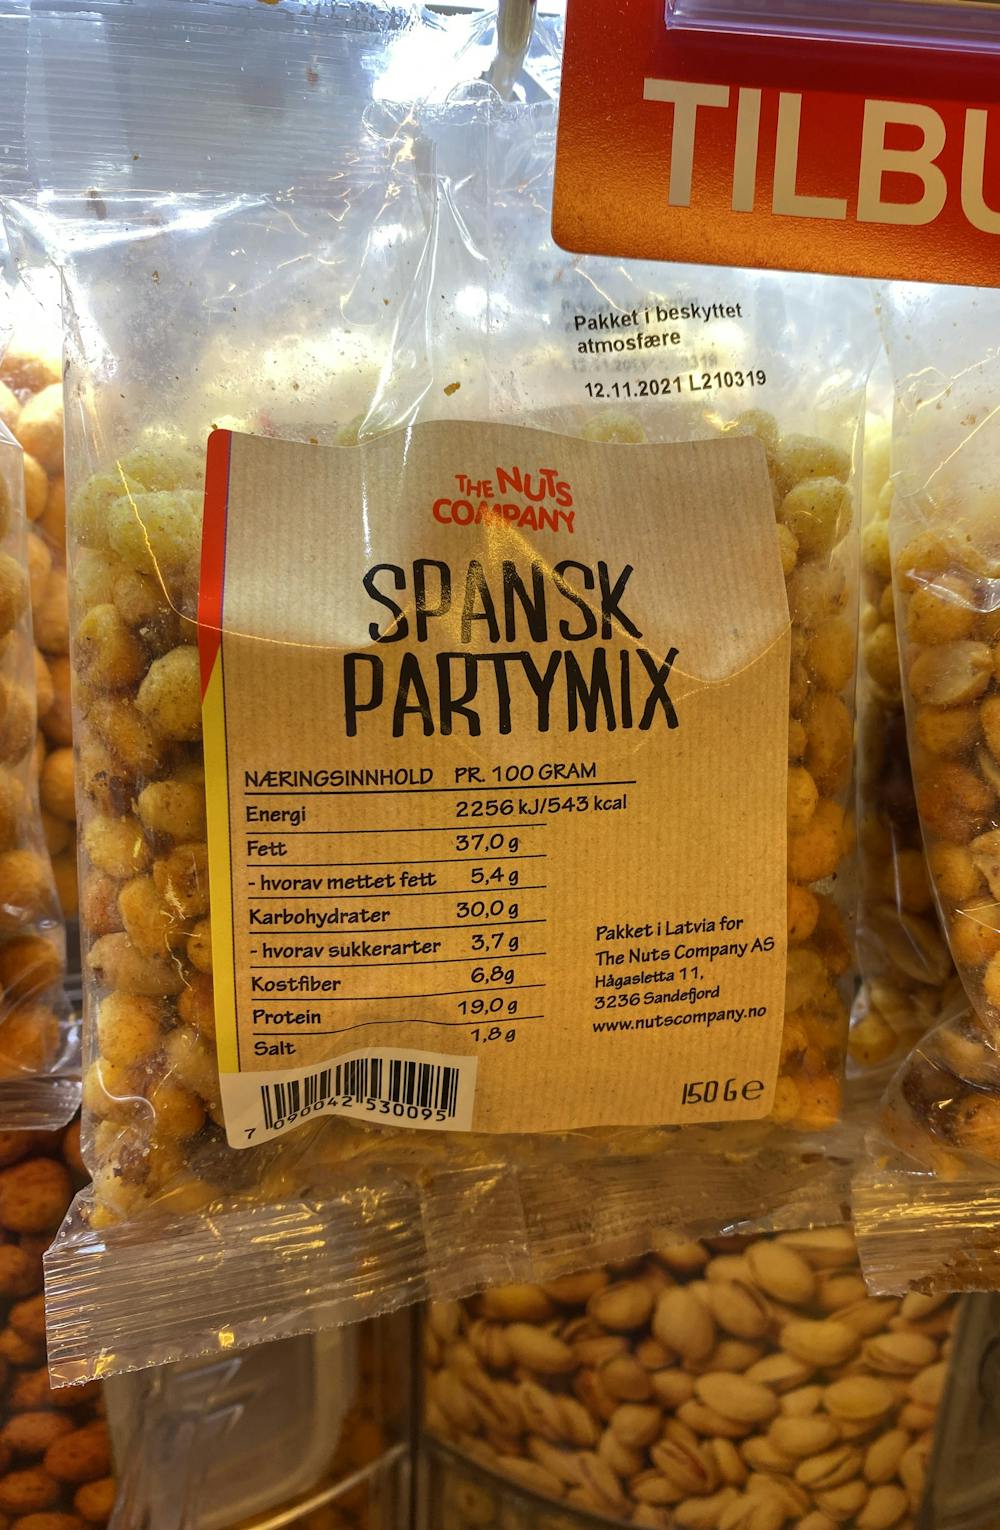 Spansk partymix, The nut company